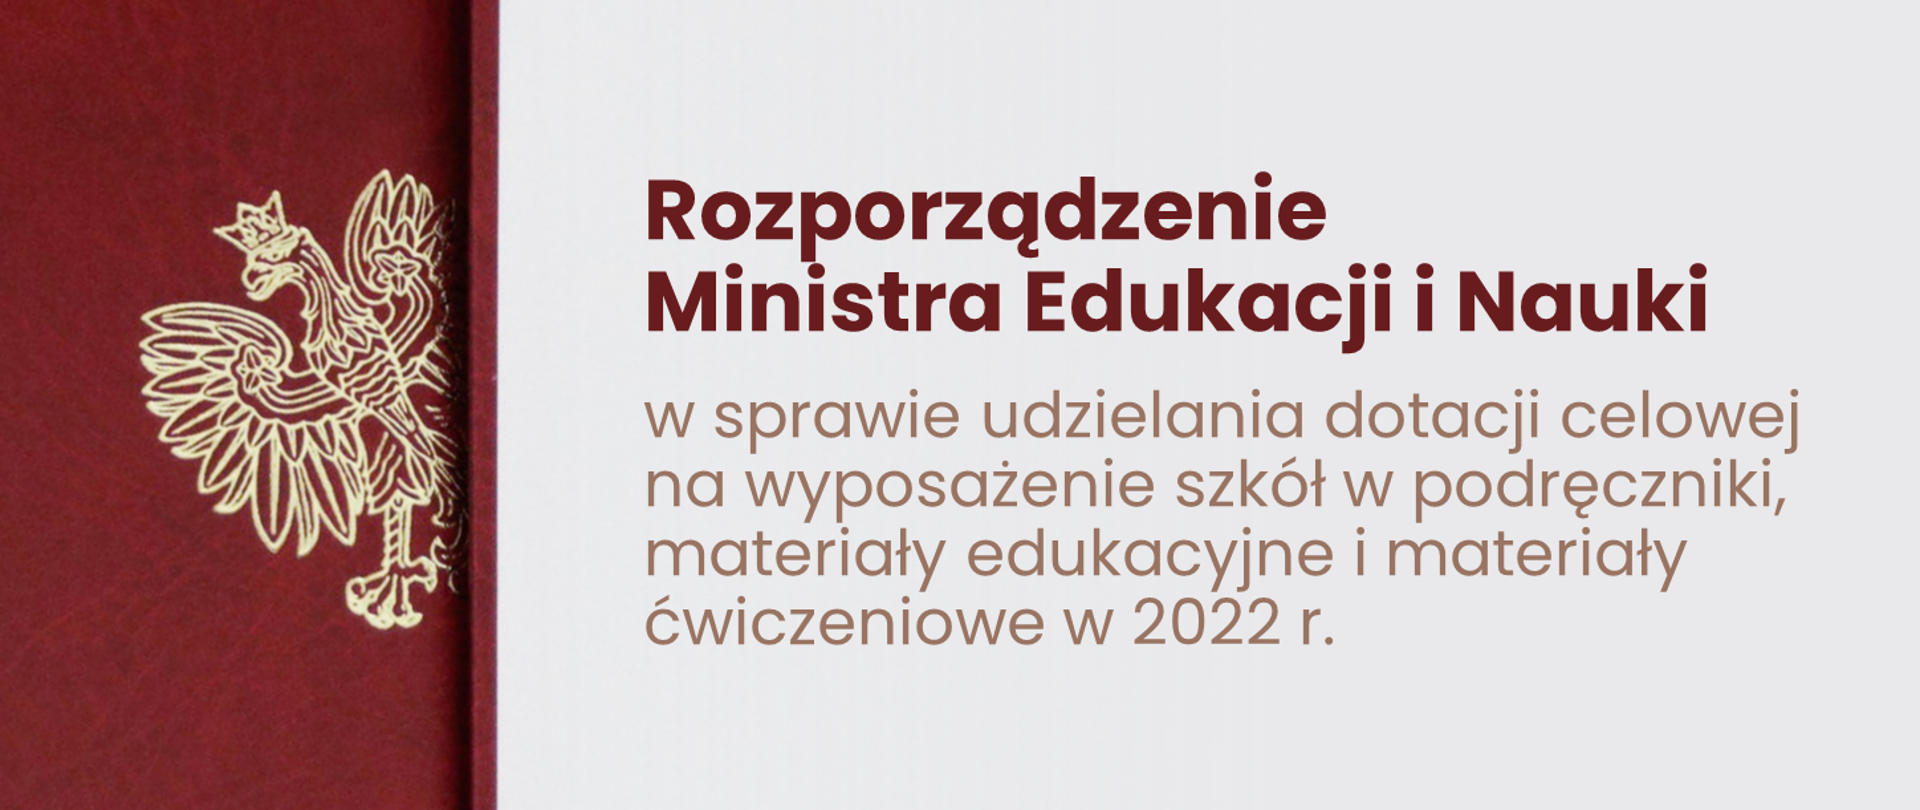 Grafika - orzeł i na białym tle napis Rozporządzenie Ministra Edukacji i Nauki z dnia 25 marca 2022 r. w sprawie udzielania dotacji celowej na wyposażenie szkół w podręczniki, materiały edukacyjne i materiały ćwiczeniowe w 2022 r.